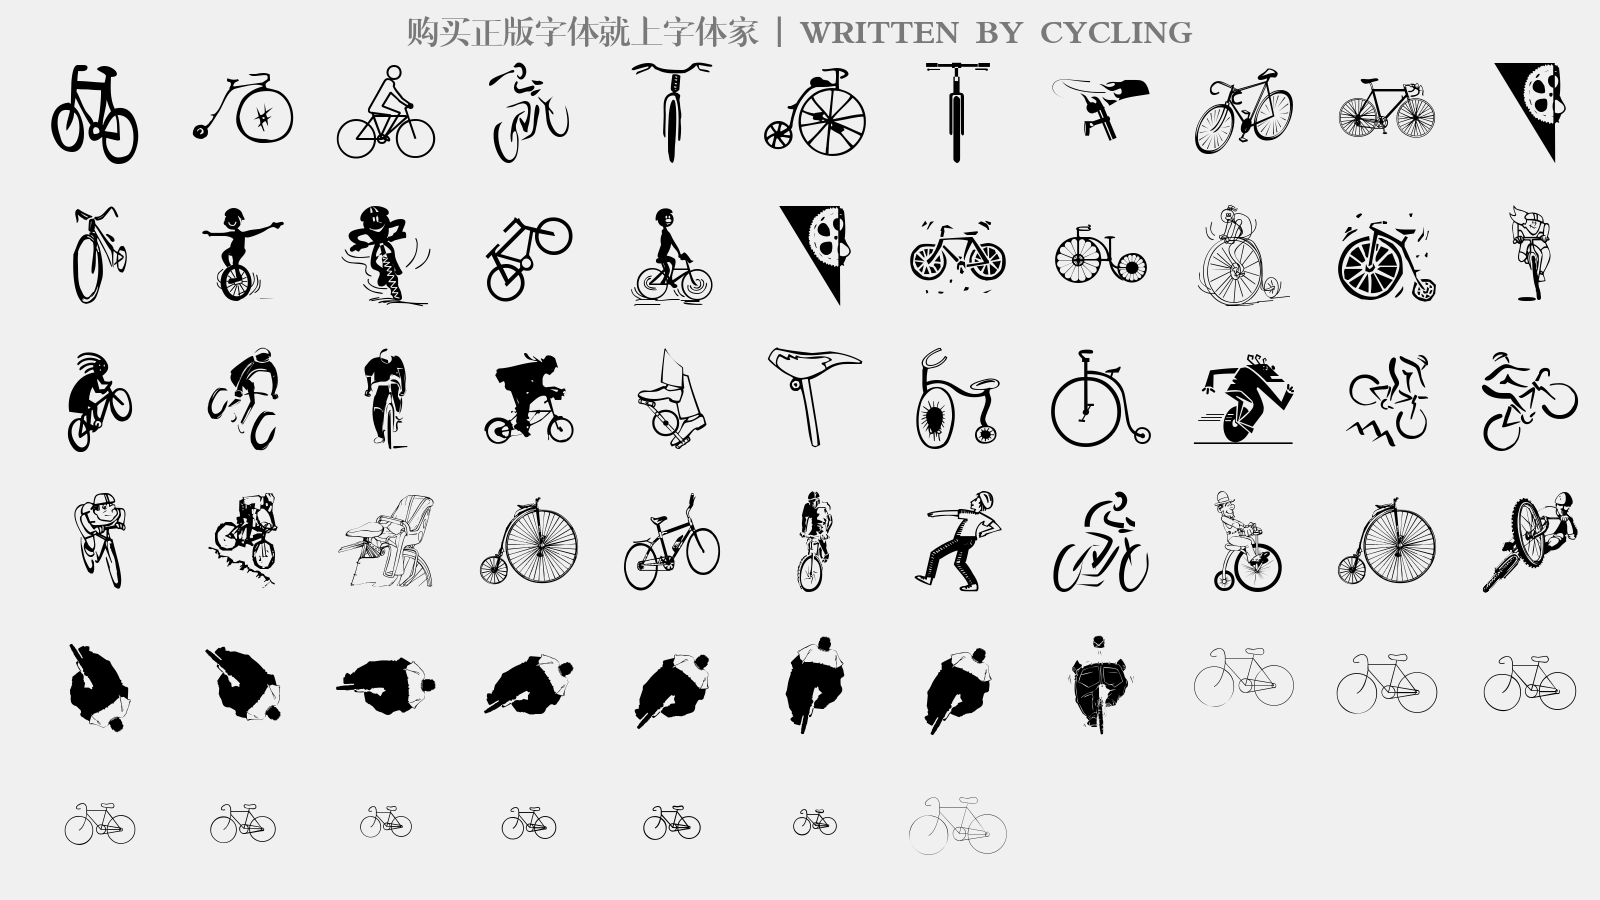 CYCLING - 大写字母/小写字母/数字